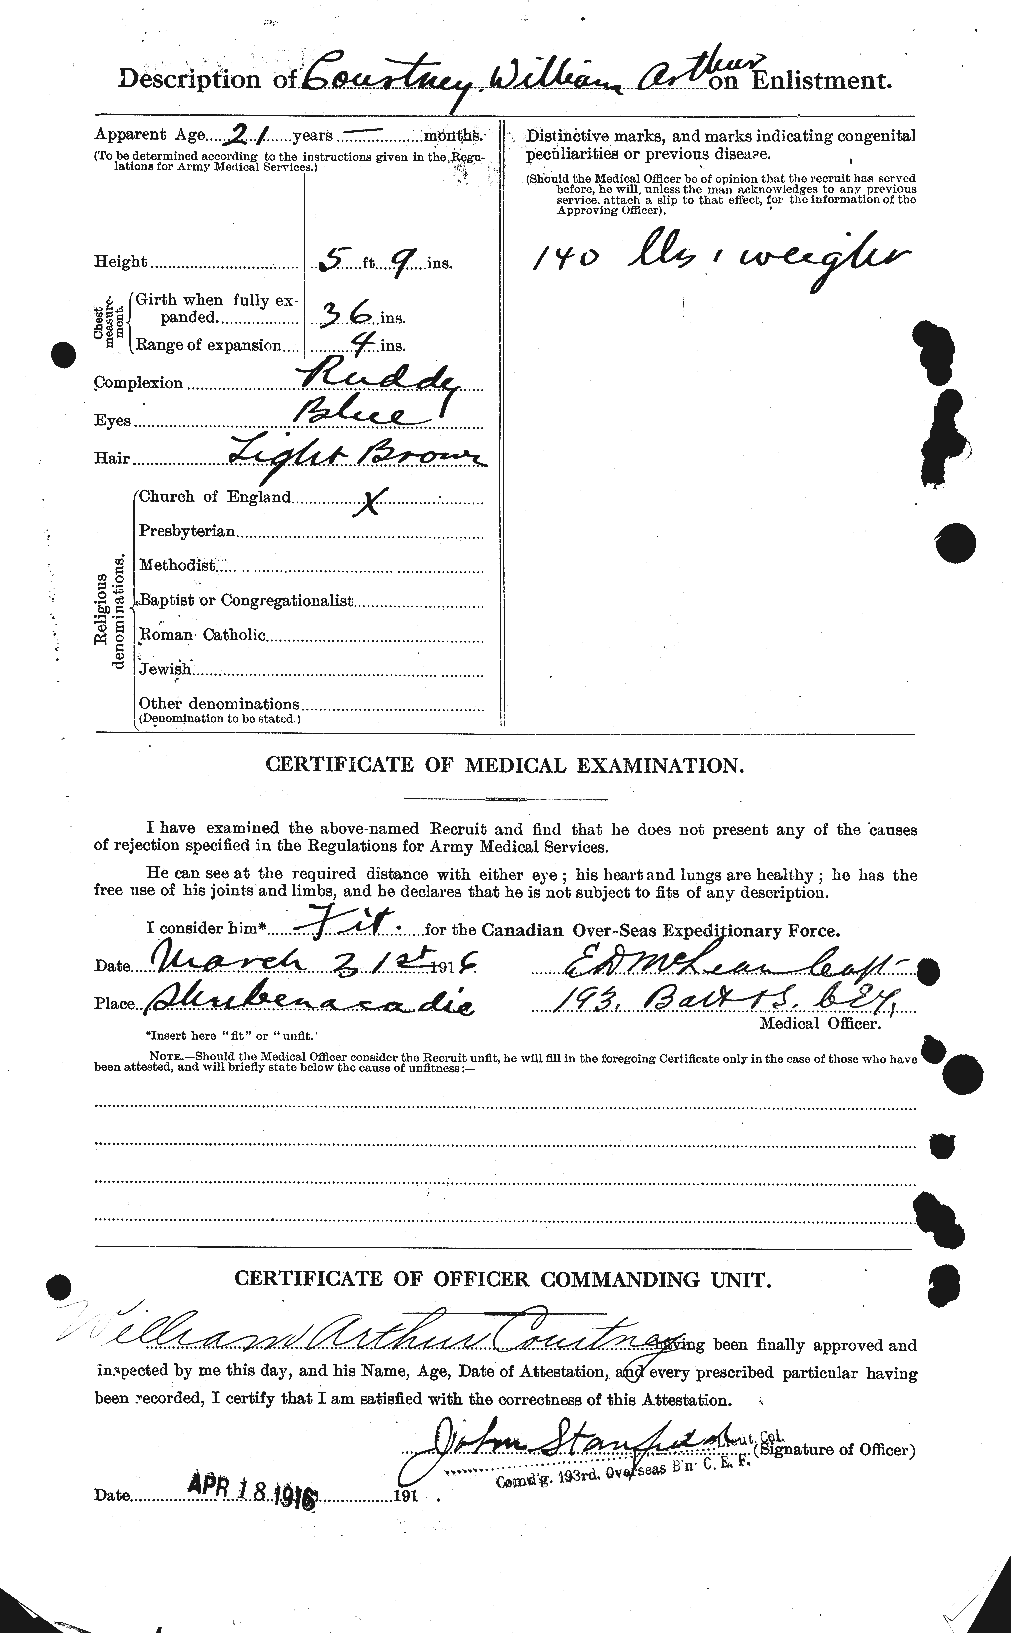 Dossiers du Personnel de la Première Guerre mondiale - CEC 059088b